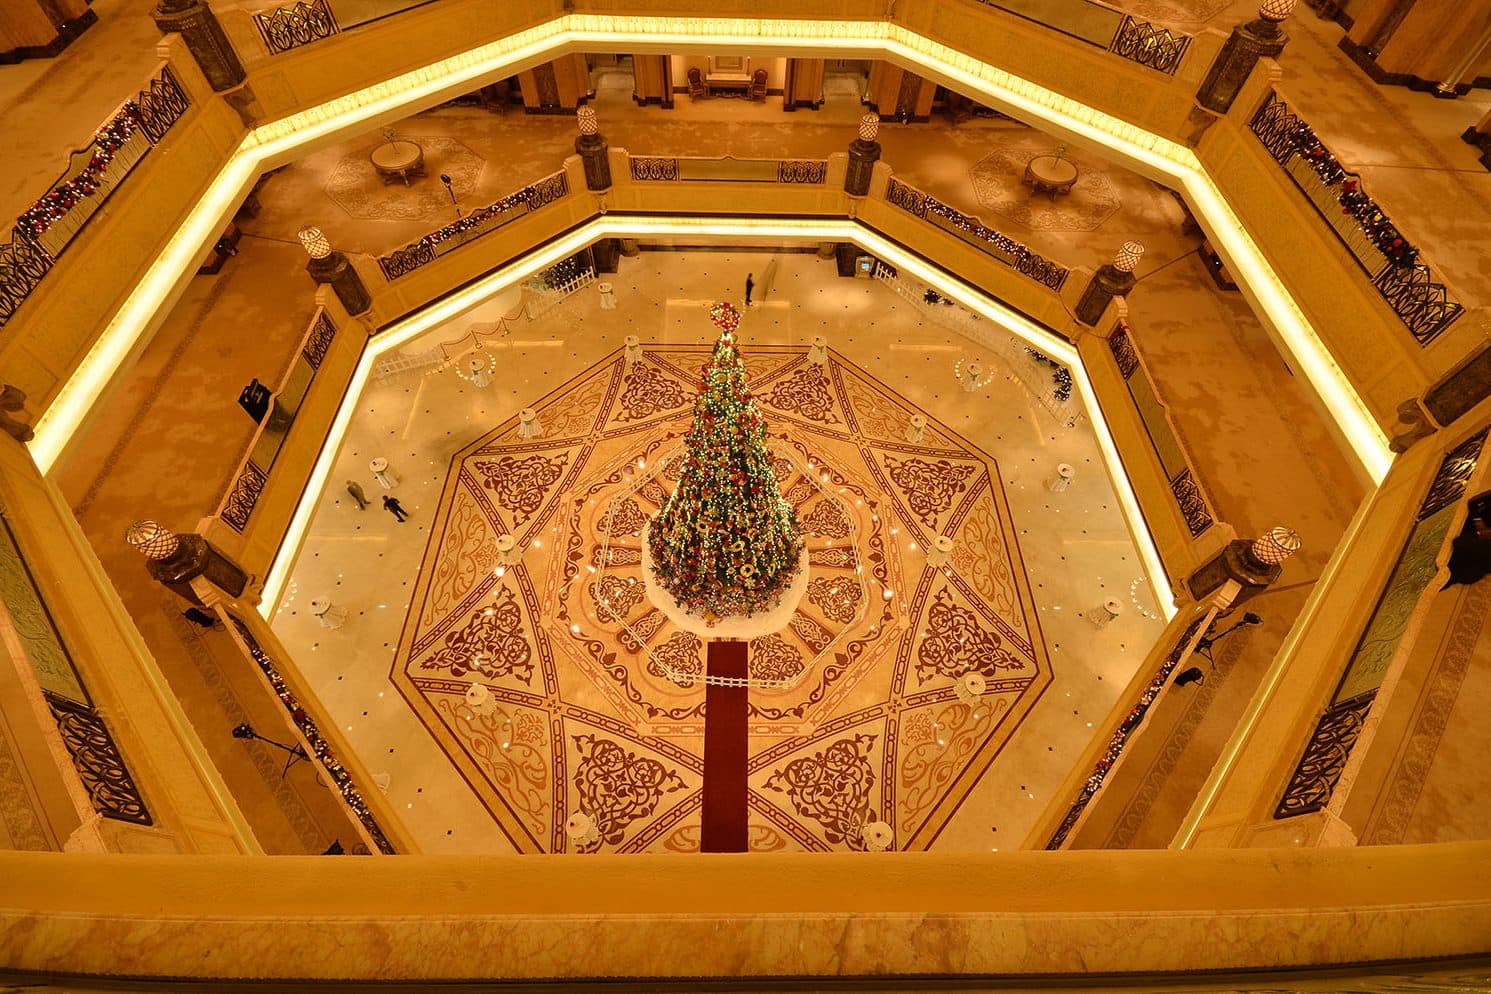 Abu Dhabi Christmas tree lighting